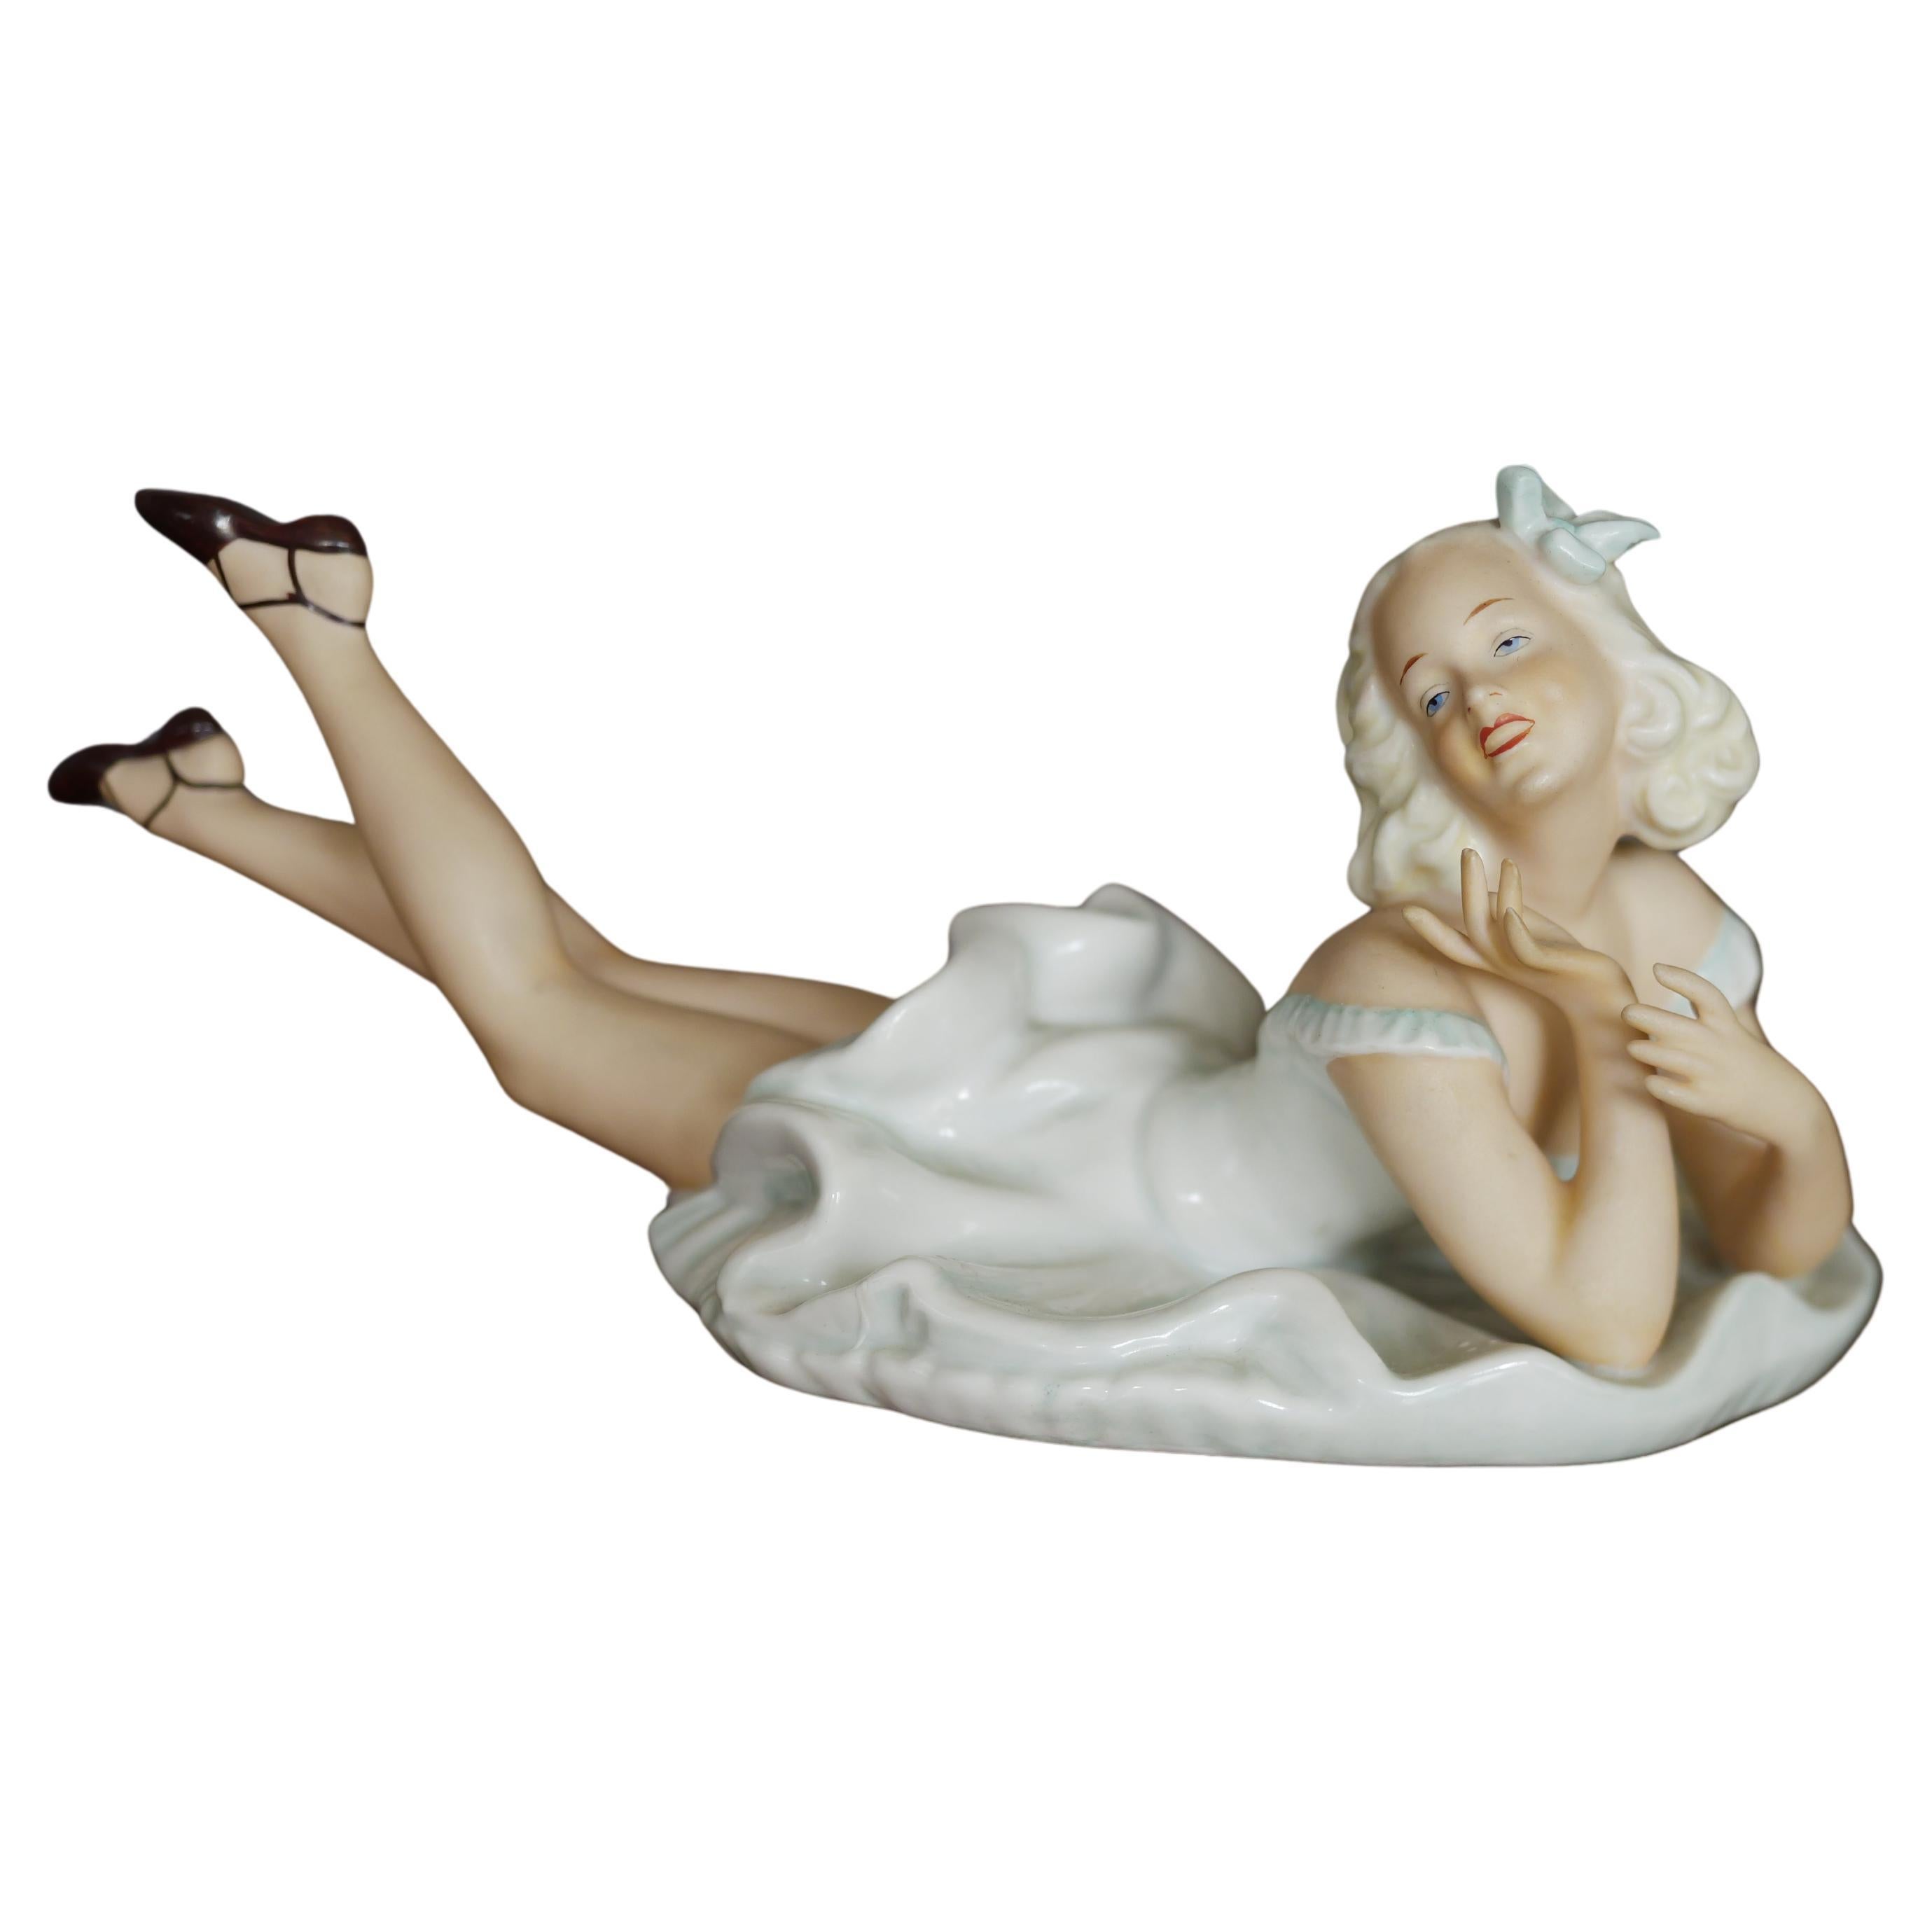 Vintage laying lady porcelain figure original Schaubach Kunst art sculpture  For Sale